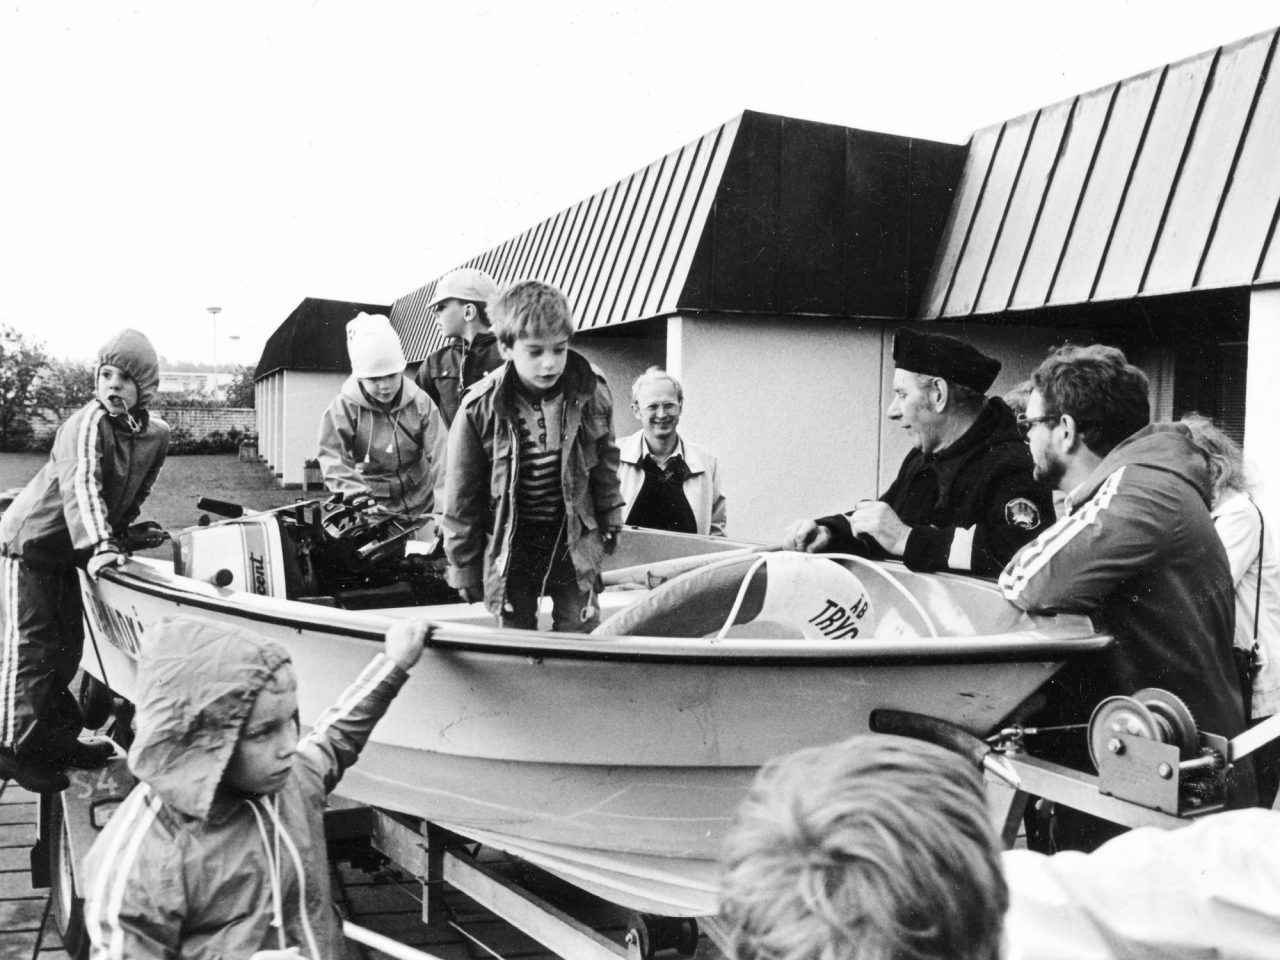 Barn leker i båt uppställd på land, bredvid båten står en polis och pratar med barnen.